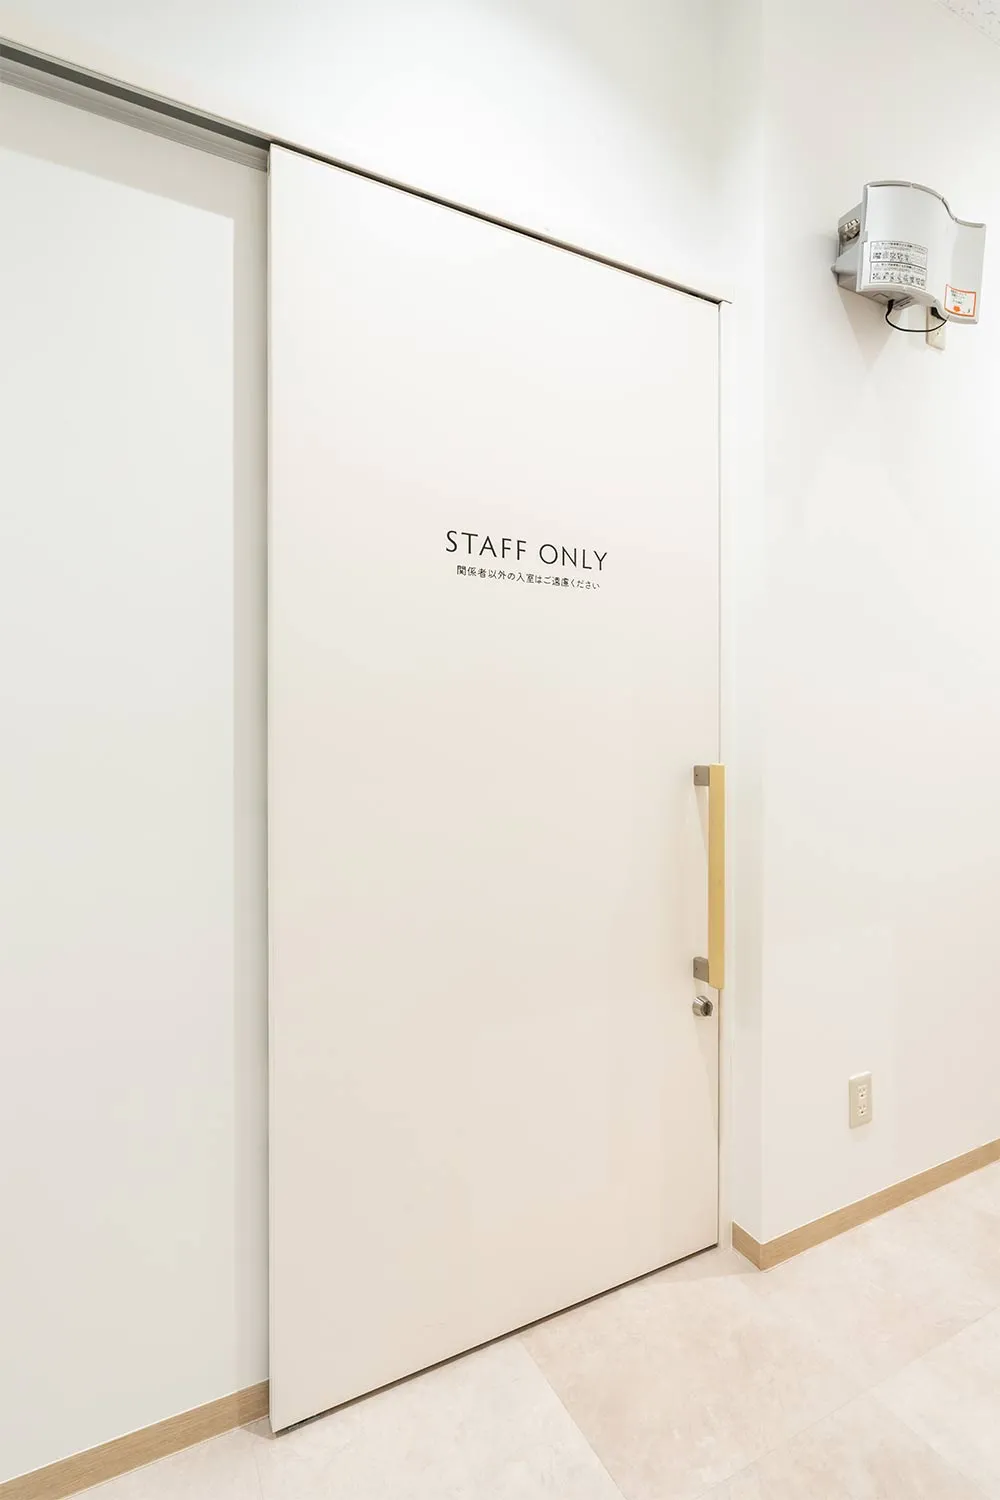 神奈川県赤十字血液センター 海老名献血ルーム : 室内ドア：おもいやりドア〈モノホワイト〉